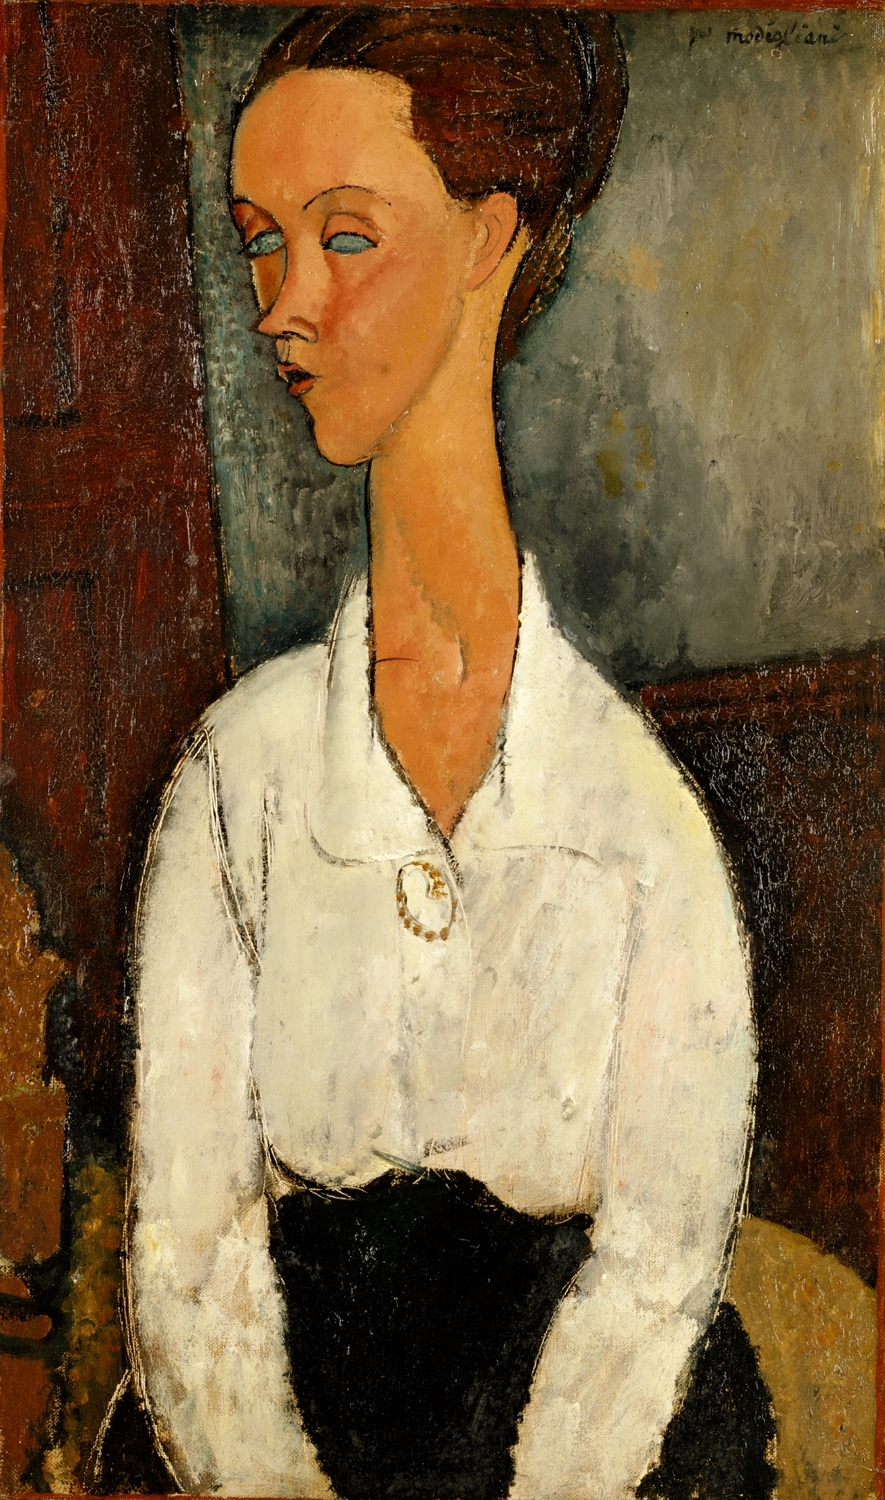 ルニア・チェホフスカの肖像 | コレクション | ポーラ美術館